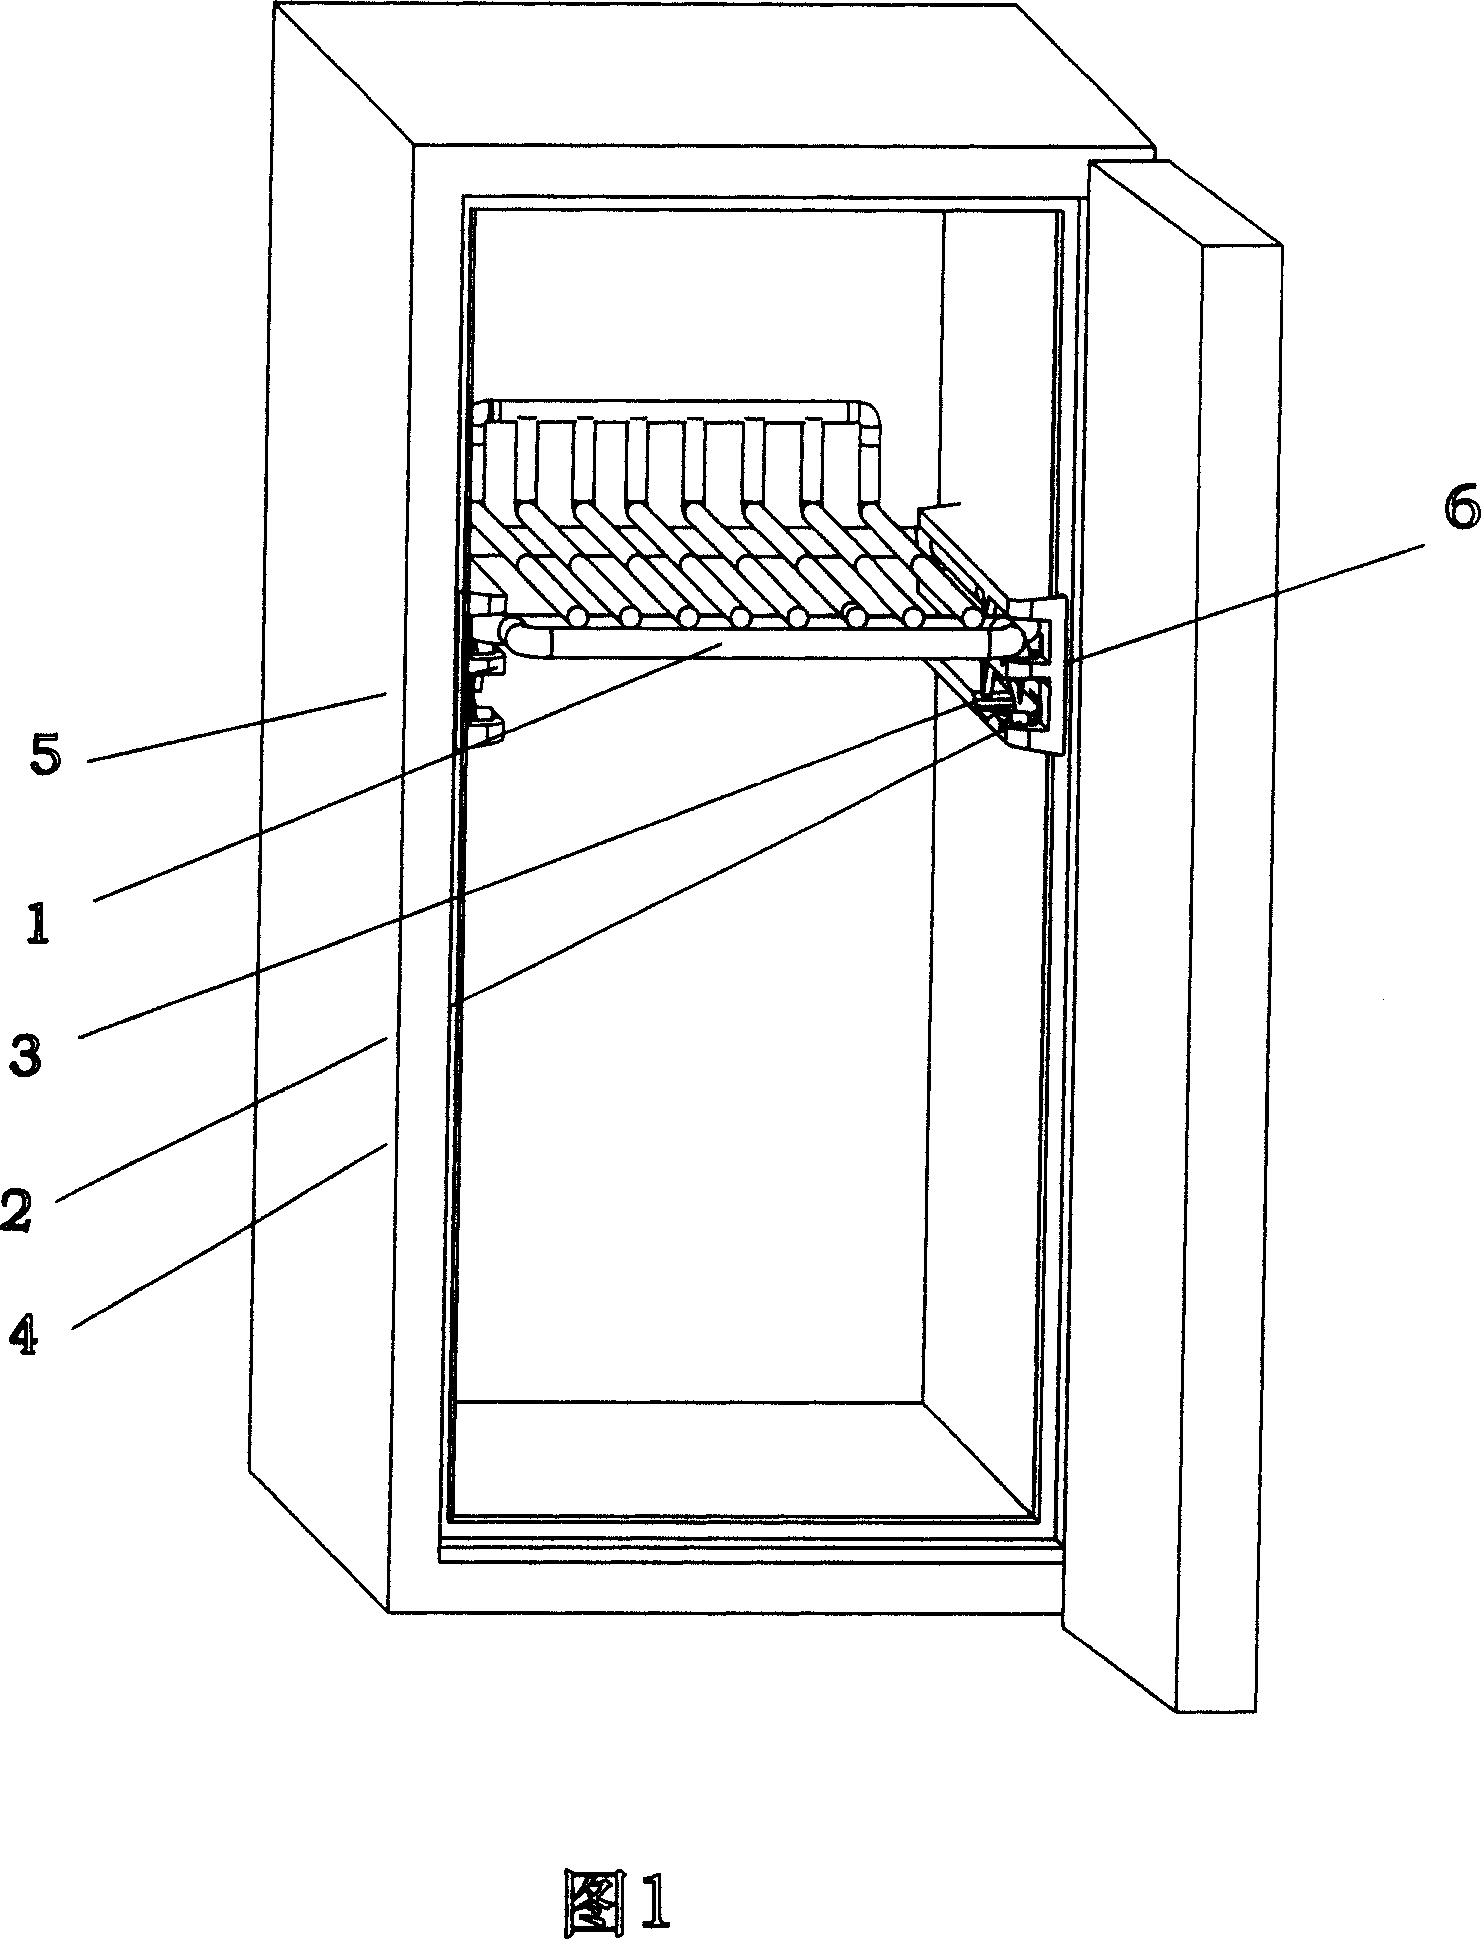 Storage unit of refrigerator with slideway